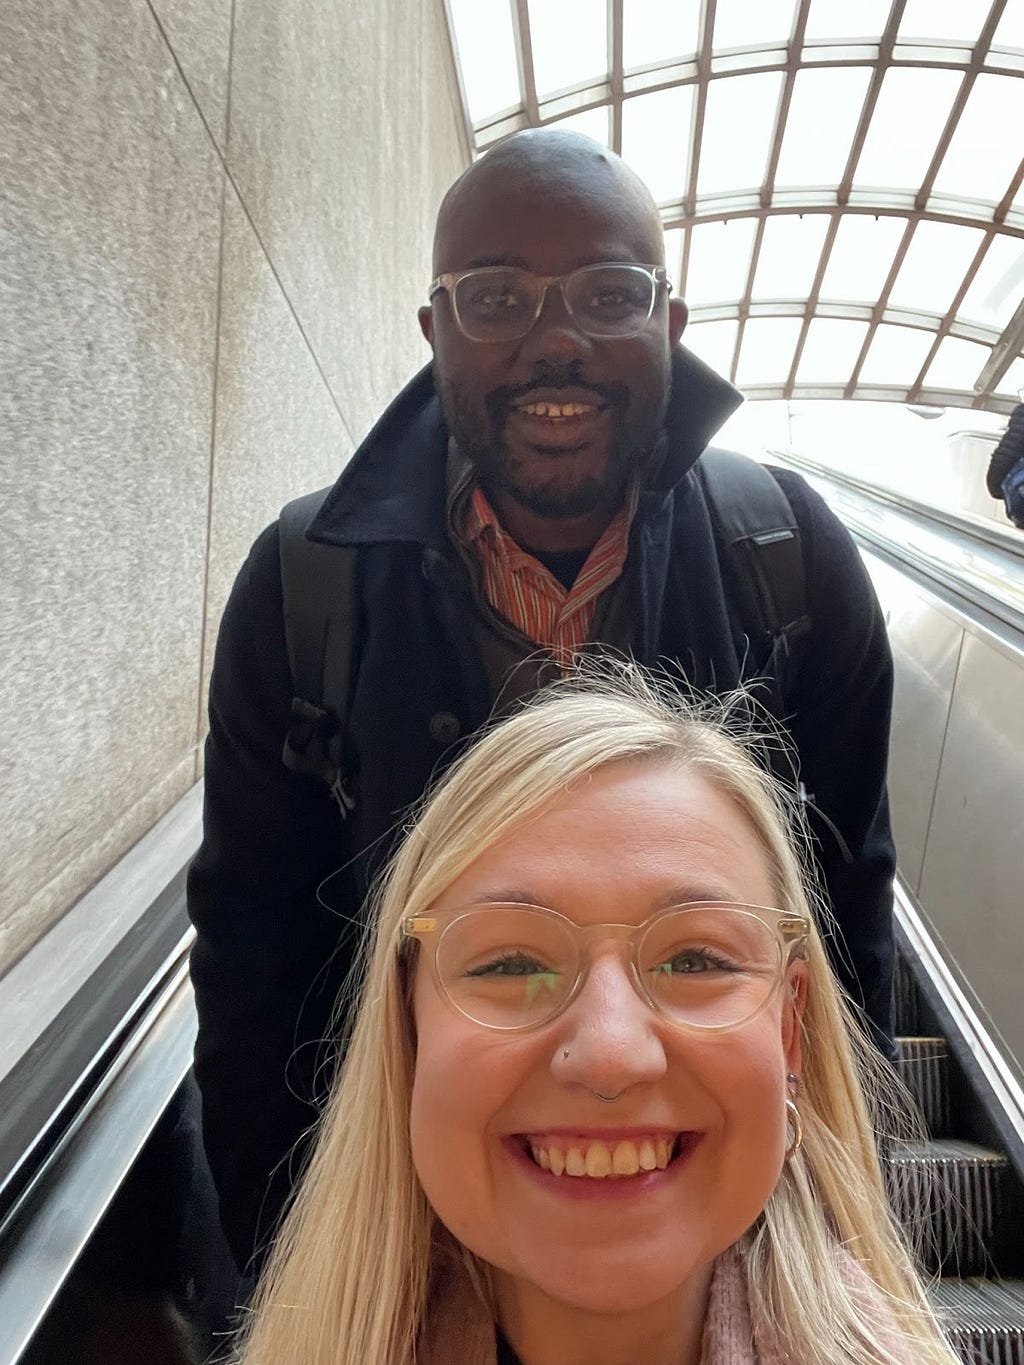 Selfie of Connie van Zanten and Absisola Fatokun on an escalator on the Washington DC metro.